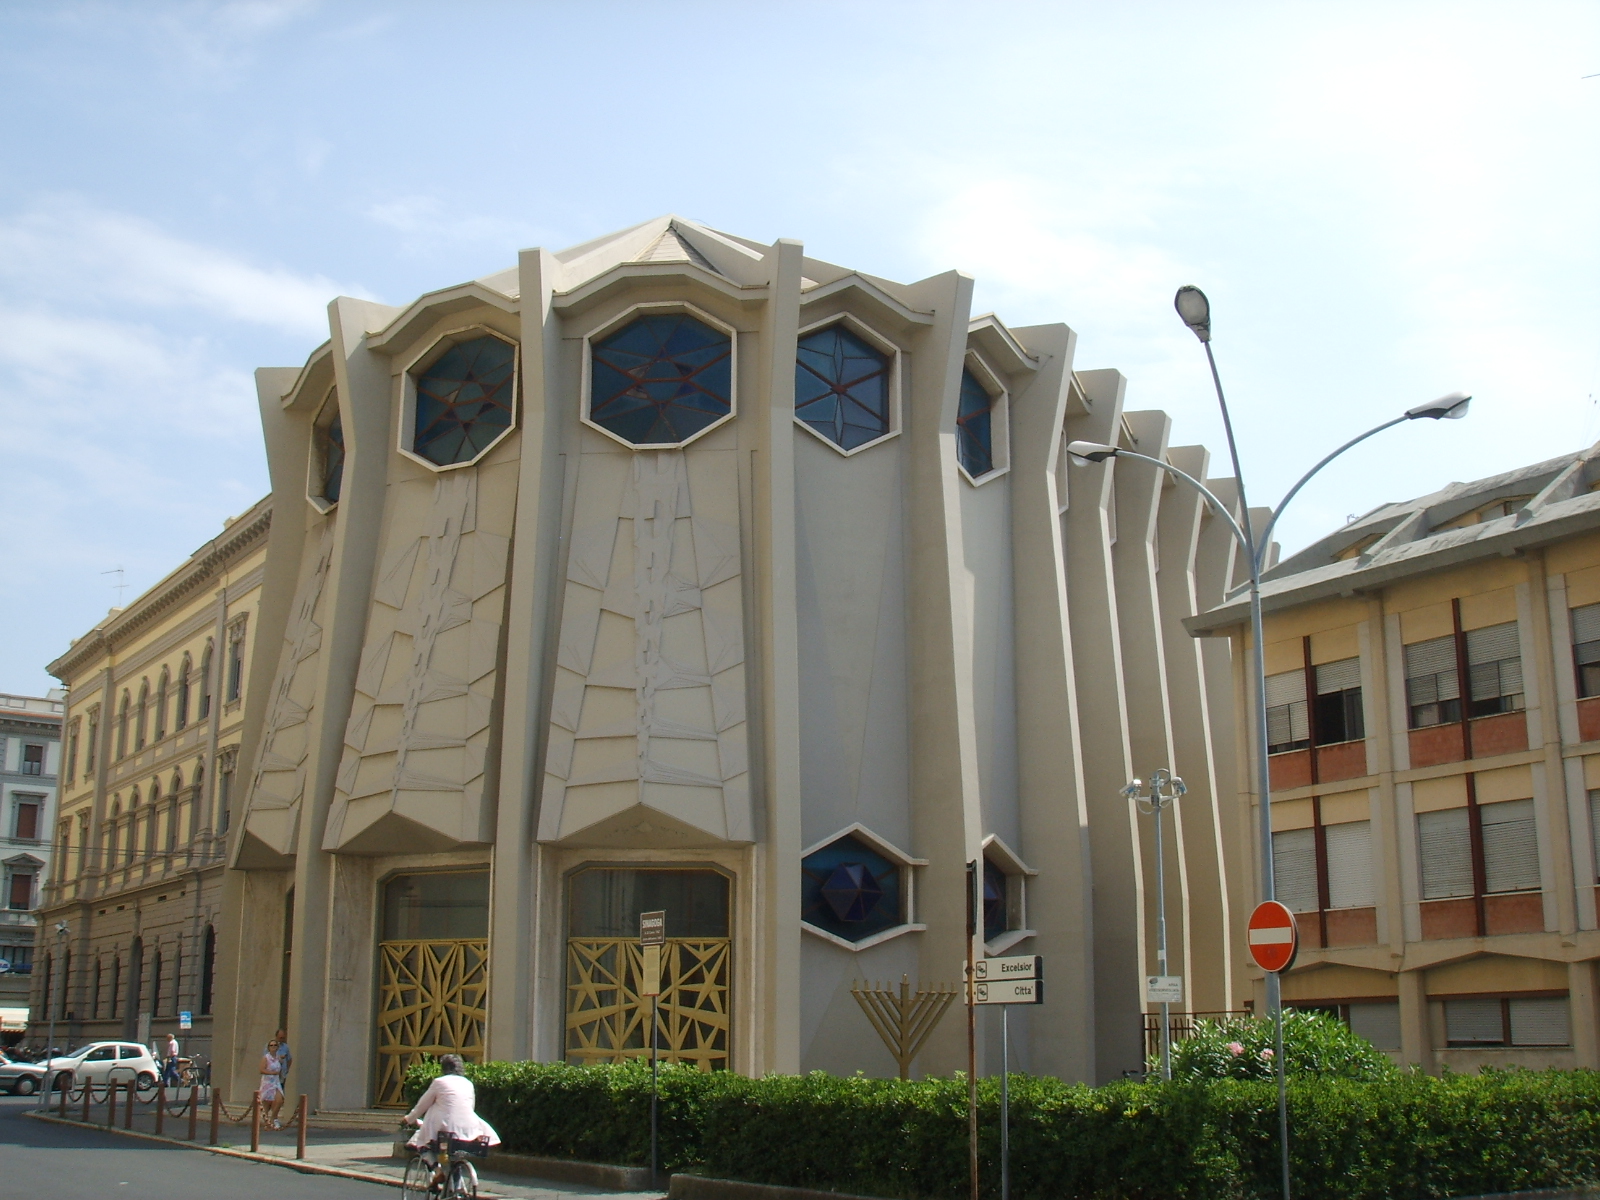 The Synagogue of Livorno